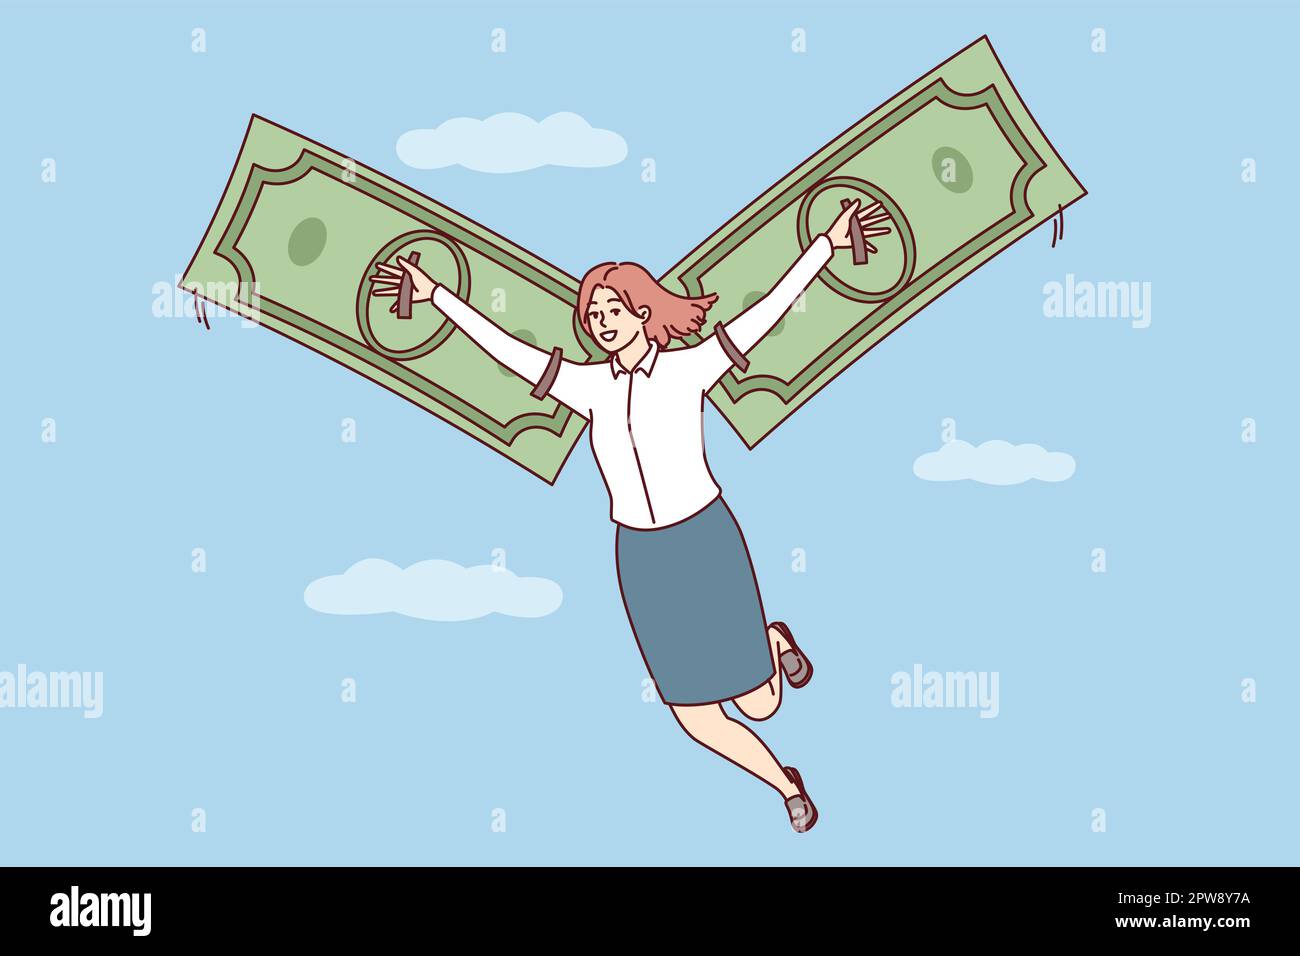 Une femme heureuse vole dans le ciel parmi les nuages en utilisant des billets de banque au lieu d'ailes Illustration de Vecteur